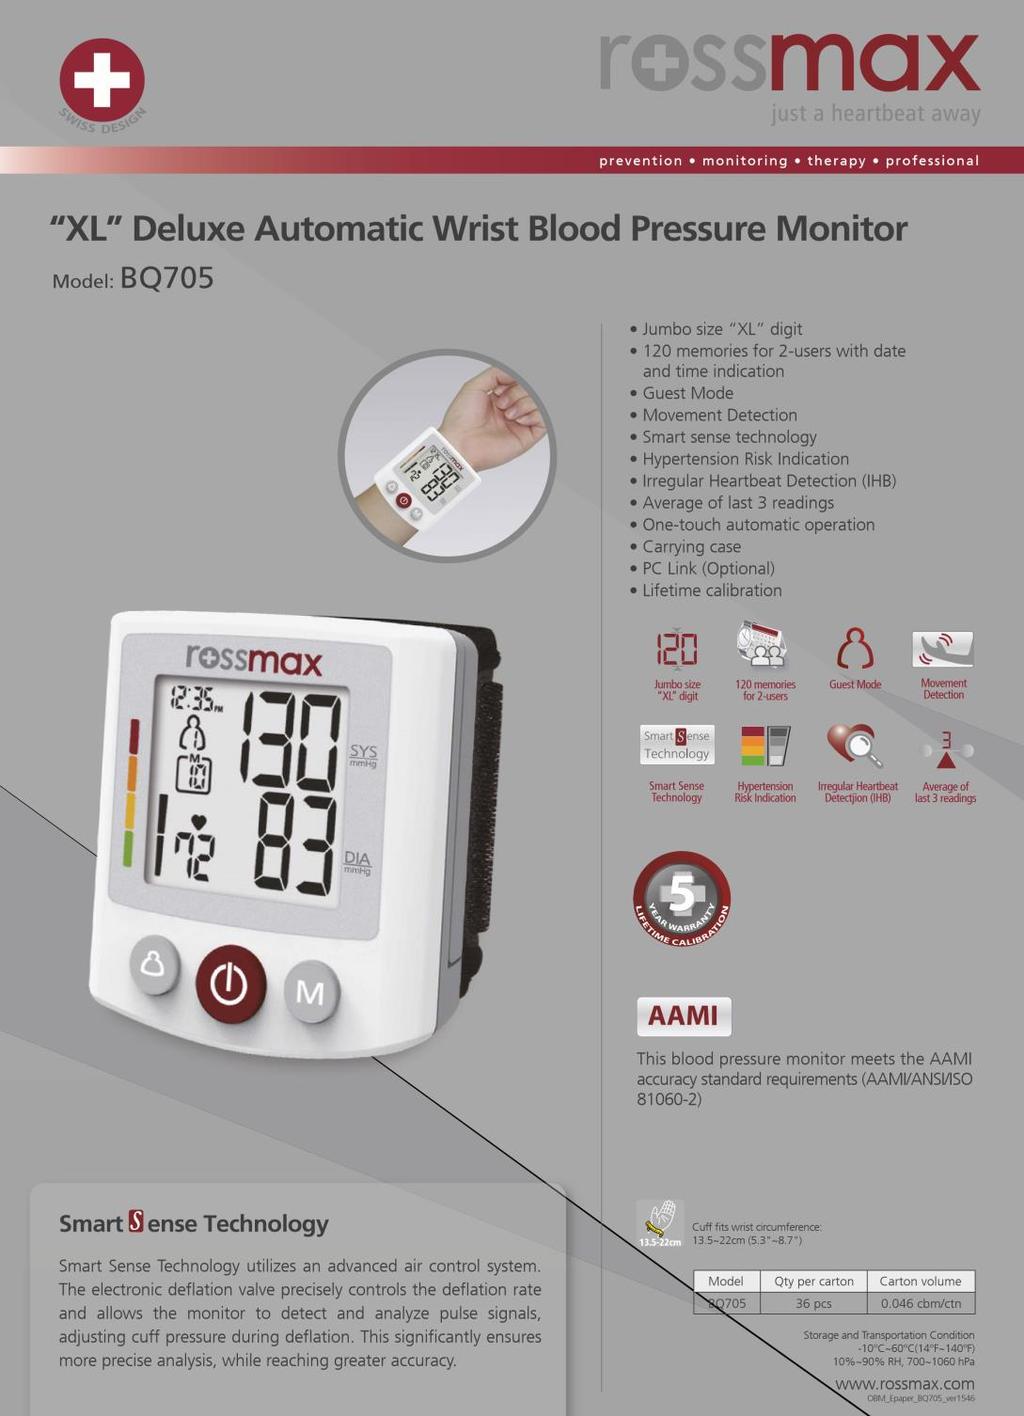 ПРОДУКТИ НА ROSSMAX 7 Автоматичен апарат за кръвно налягане